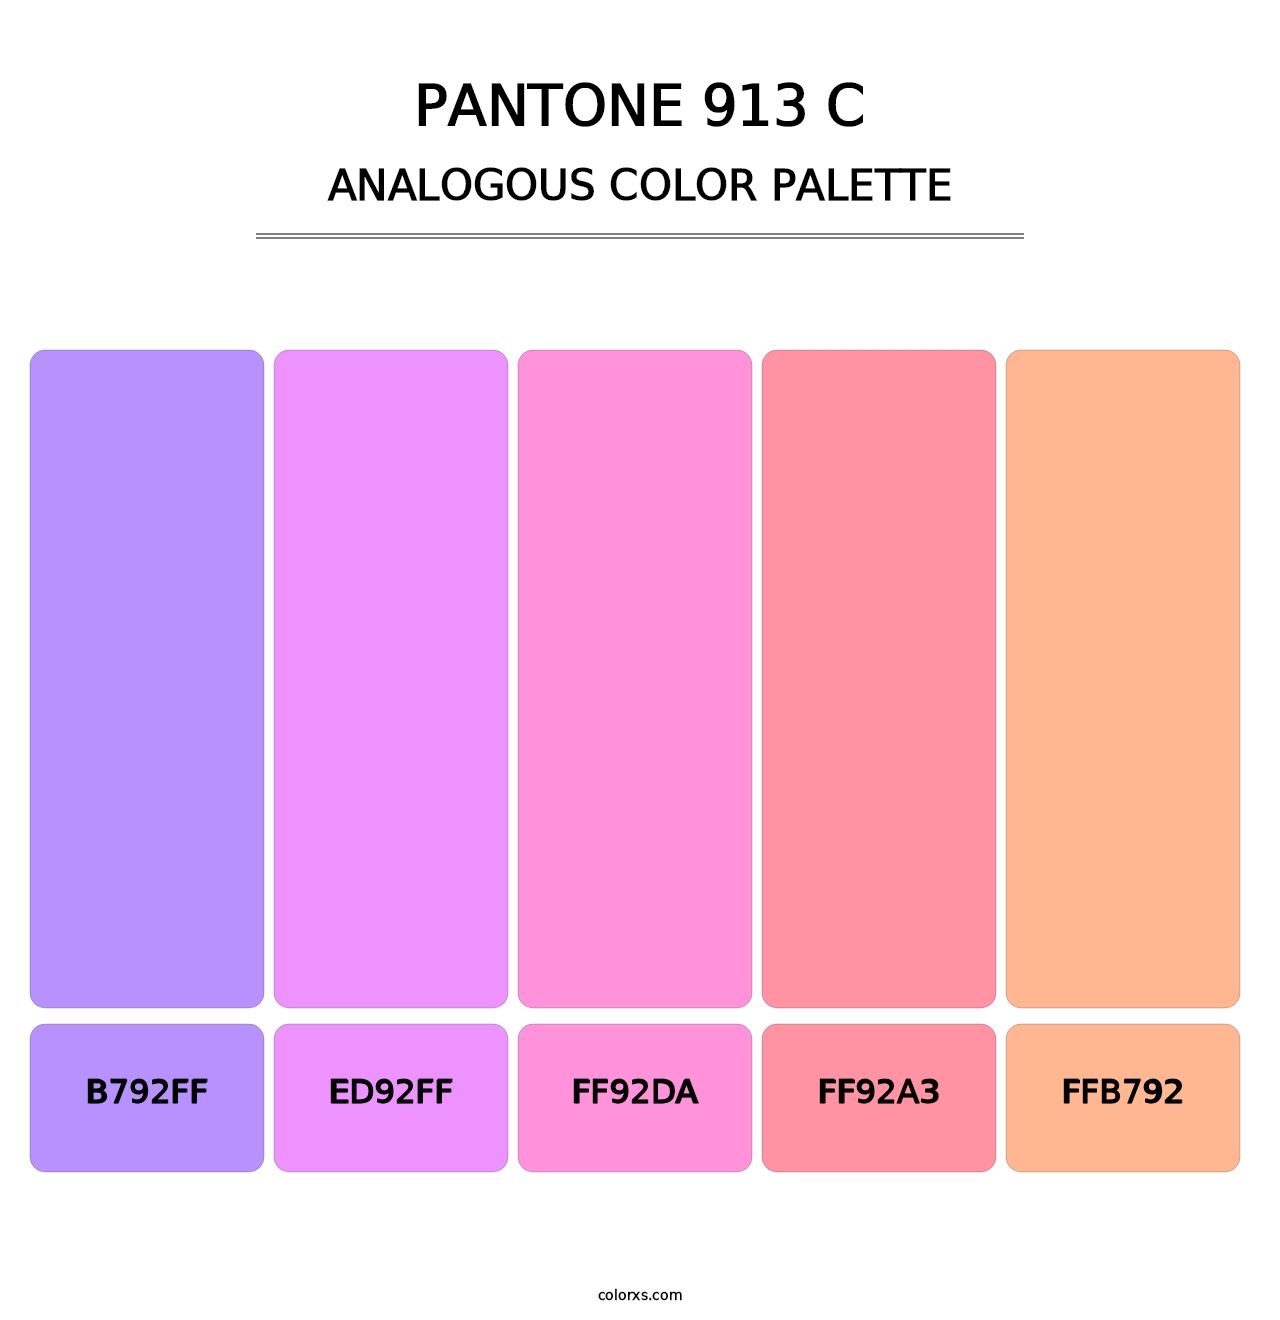 PANTONE 913 C - Analogous Color Palette